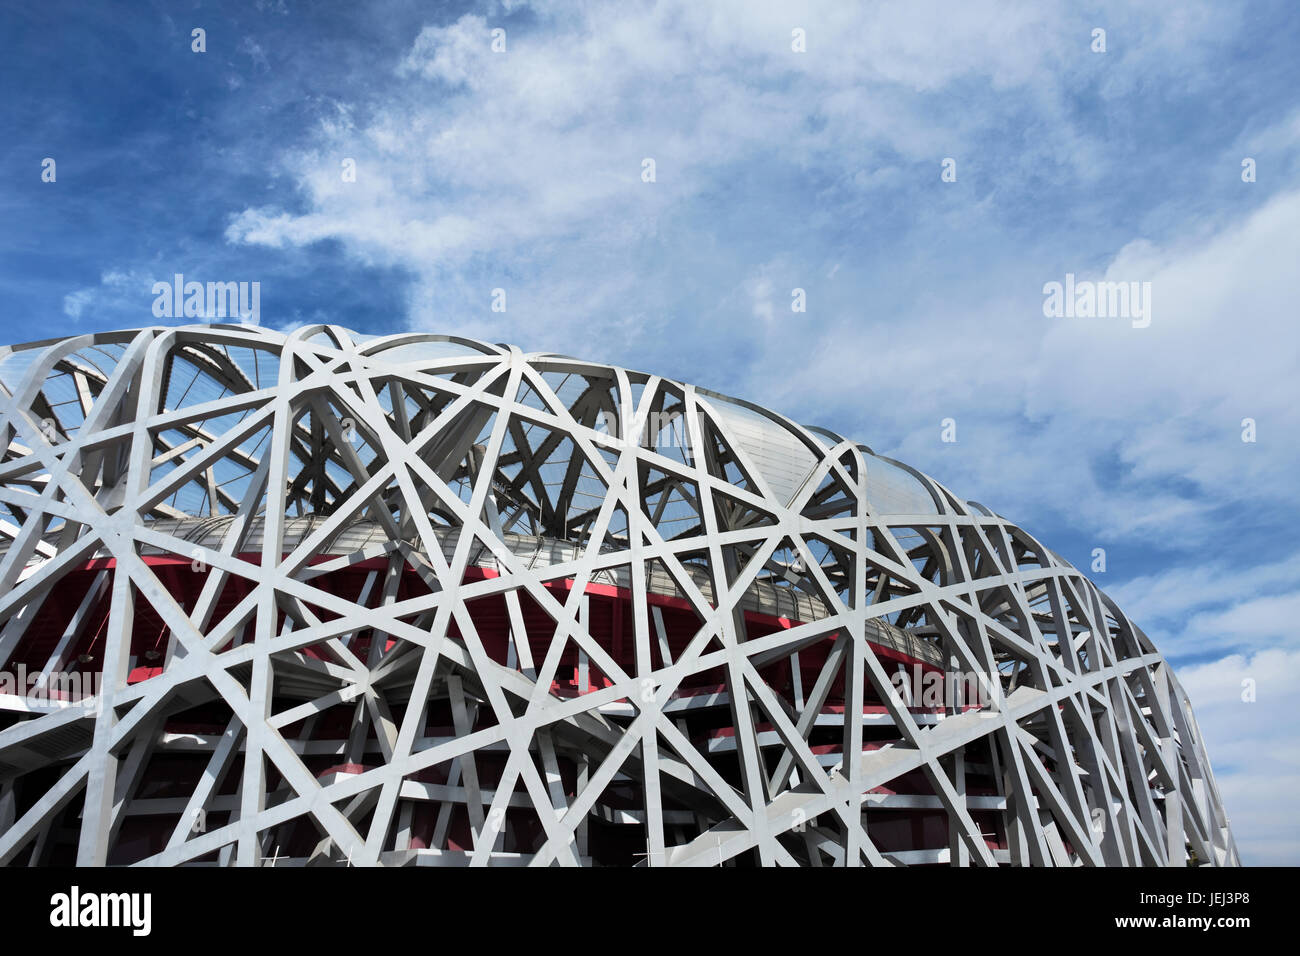 PECHINO - SETTEMBRE 17. Nido d'uccello di giorno. Il Bird's Nest è uno stadio di Pechino, Cina. È stato progettato per le Olimpiadi estive del 2008. Foto Stock